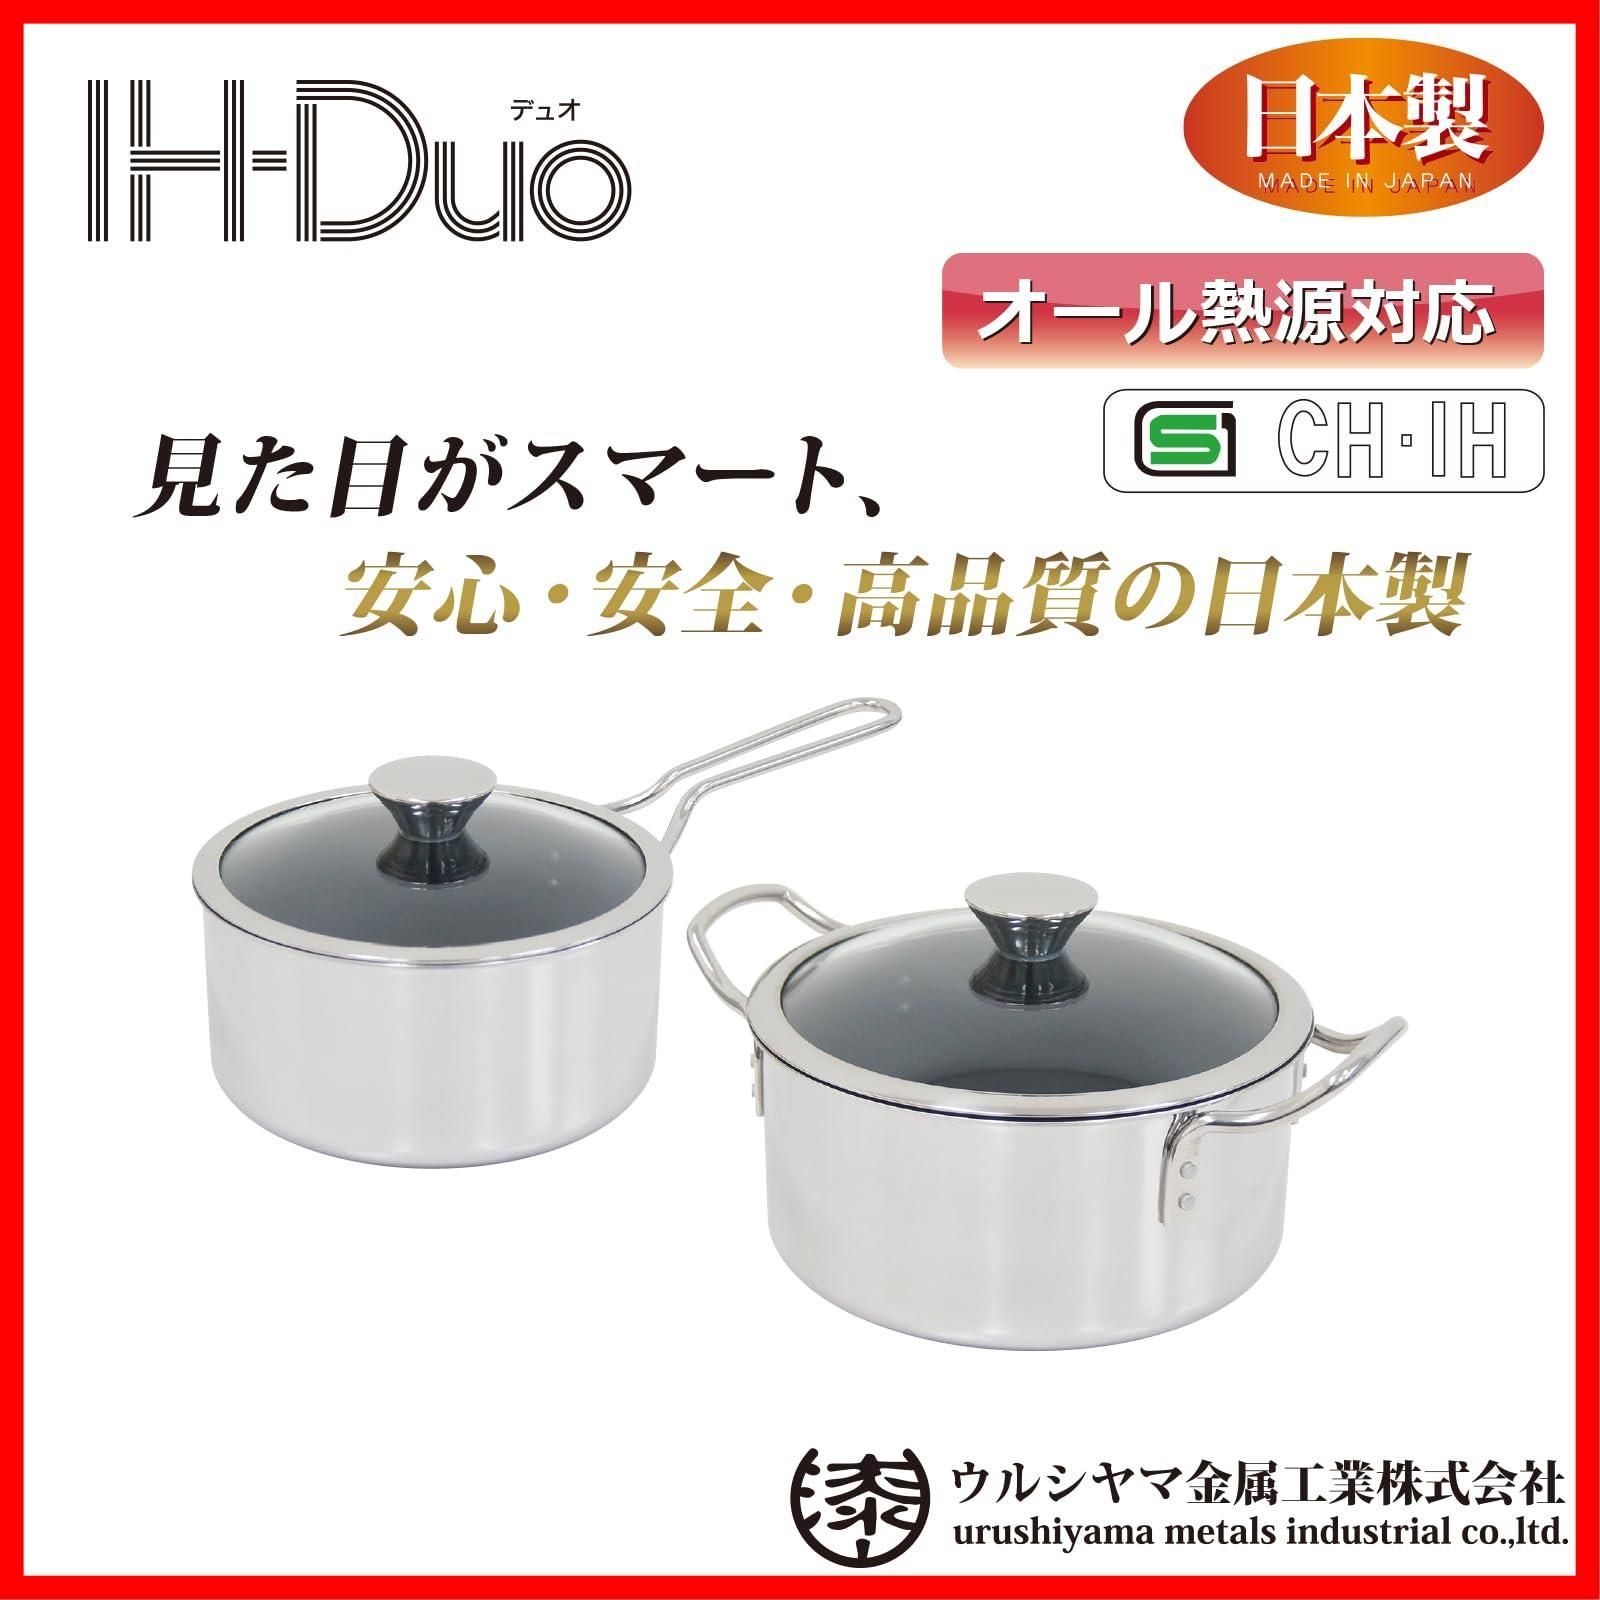 ウルシヤマ金属工業 片手鍋 ミルクパン 14cm IH対応 ステンレス製 日本製 IH-デュオ DUO-14S PFOAフリー